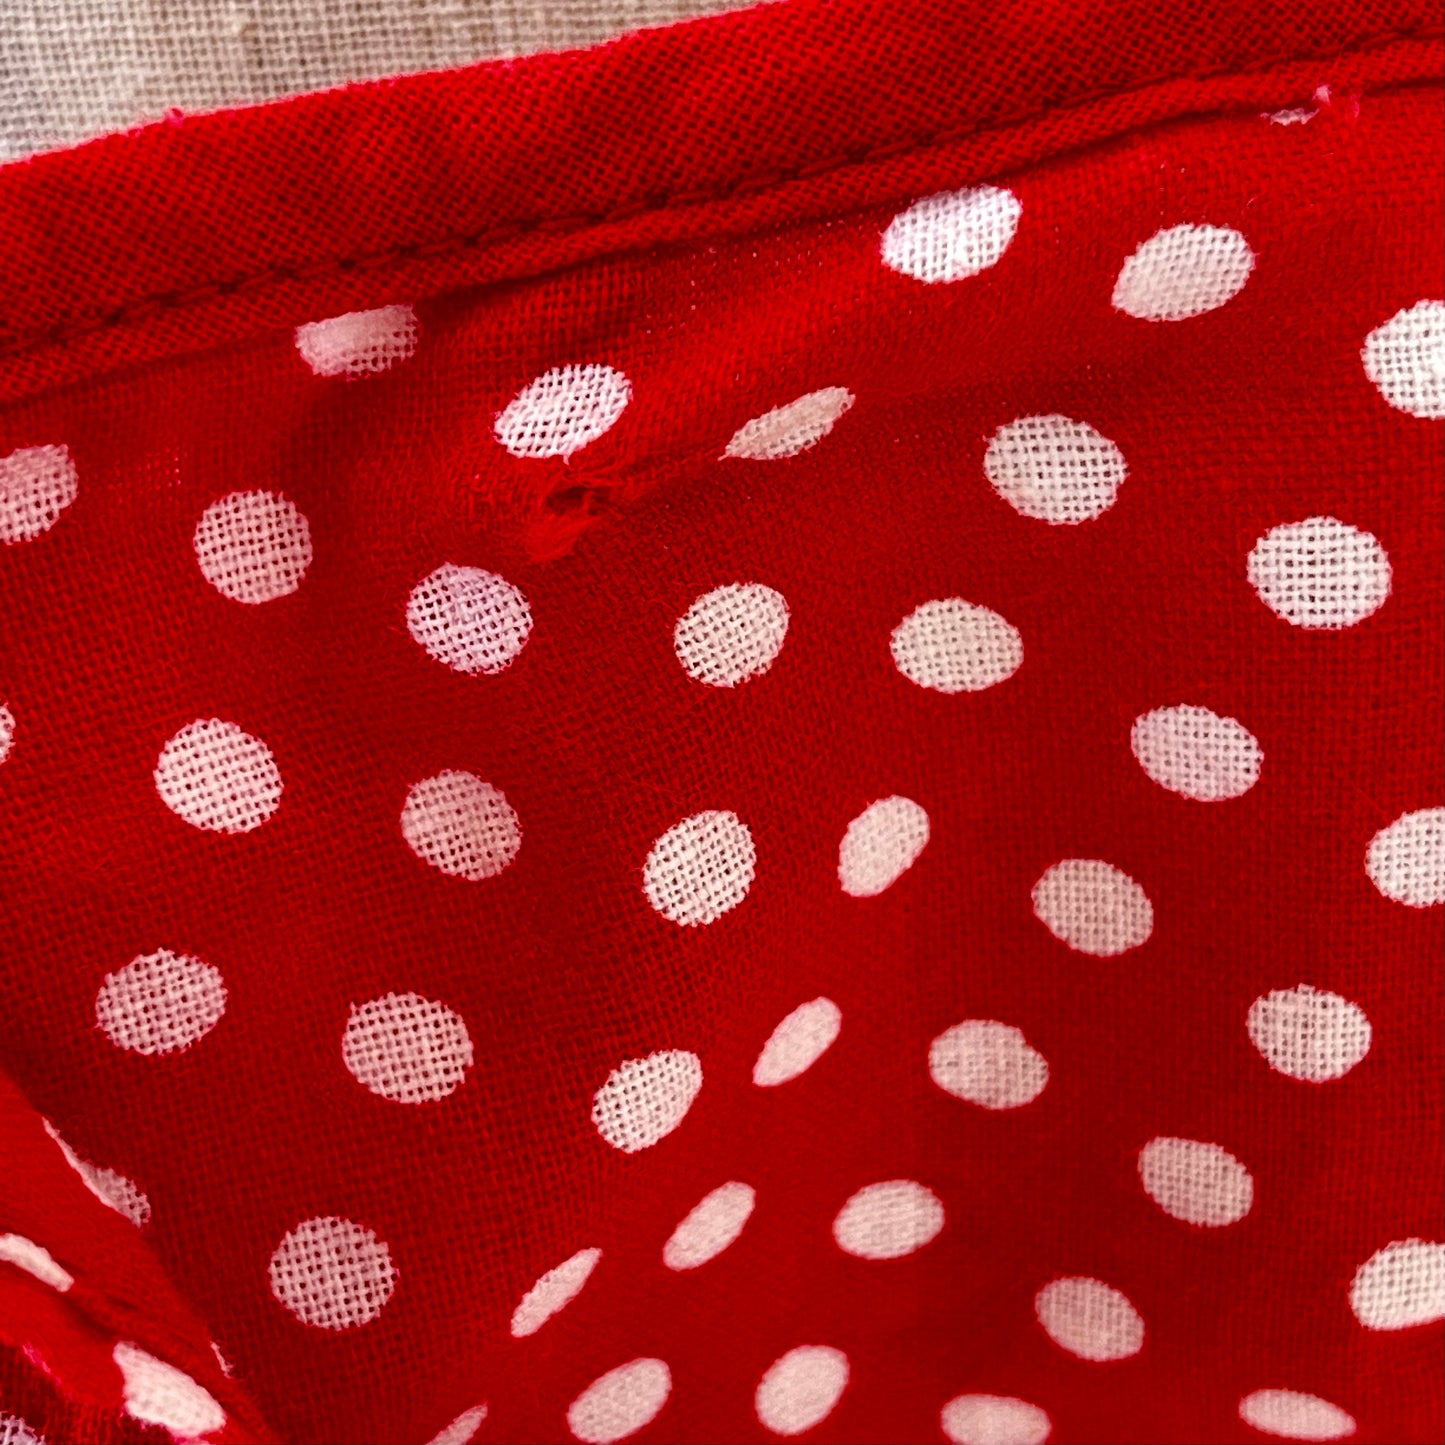 Retro Inspired Women's Homemade Red Polka Dot Dress